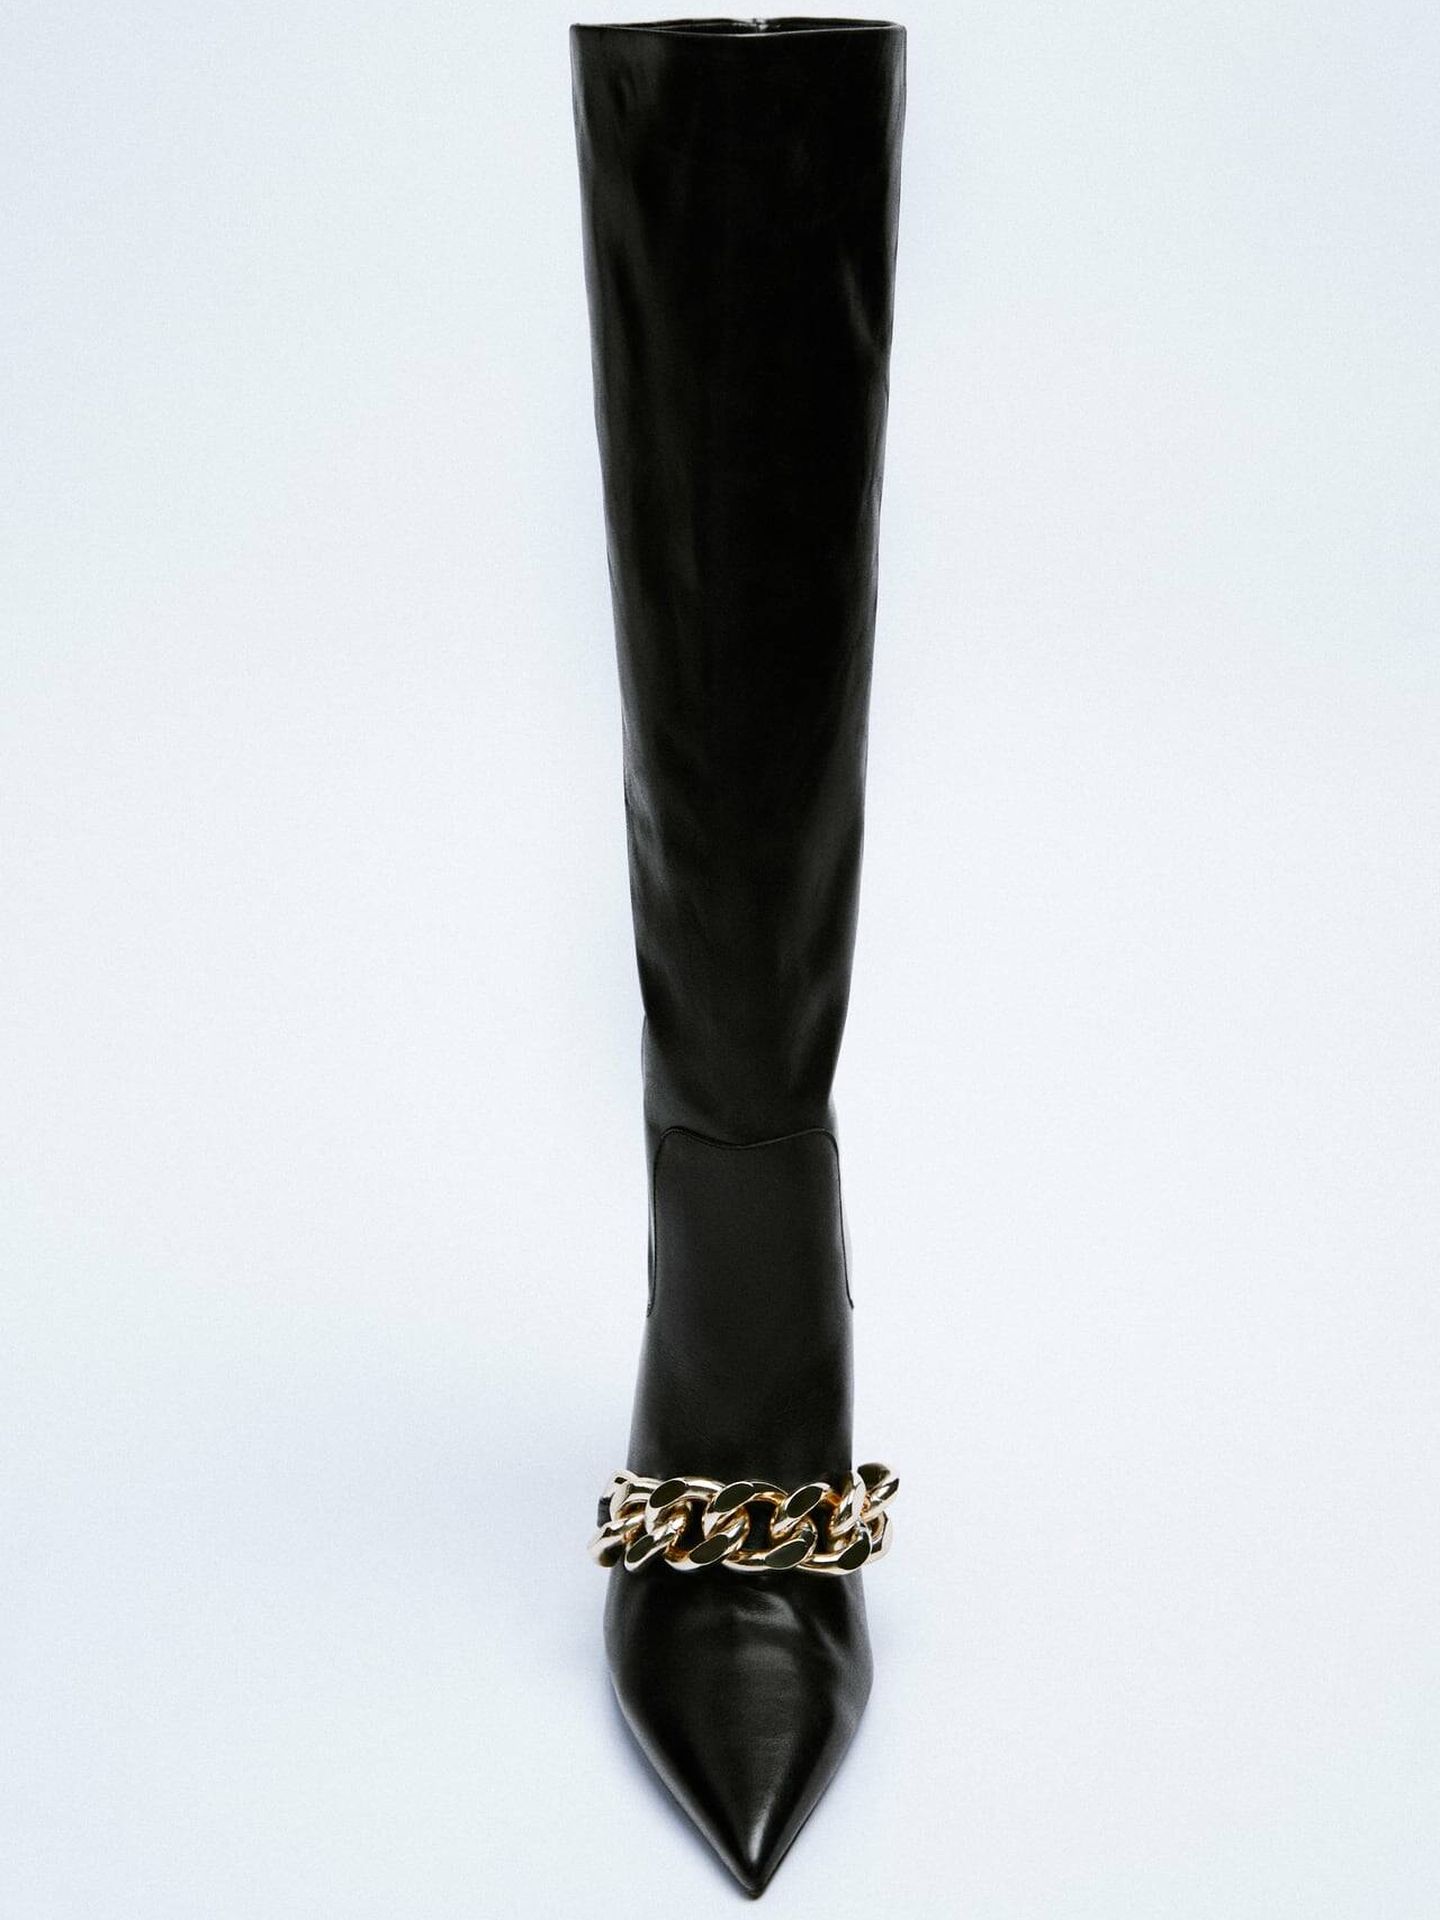 Alerta tendencia: Zara lanza botas altas de tacón de la